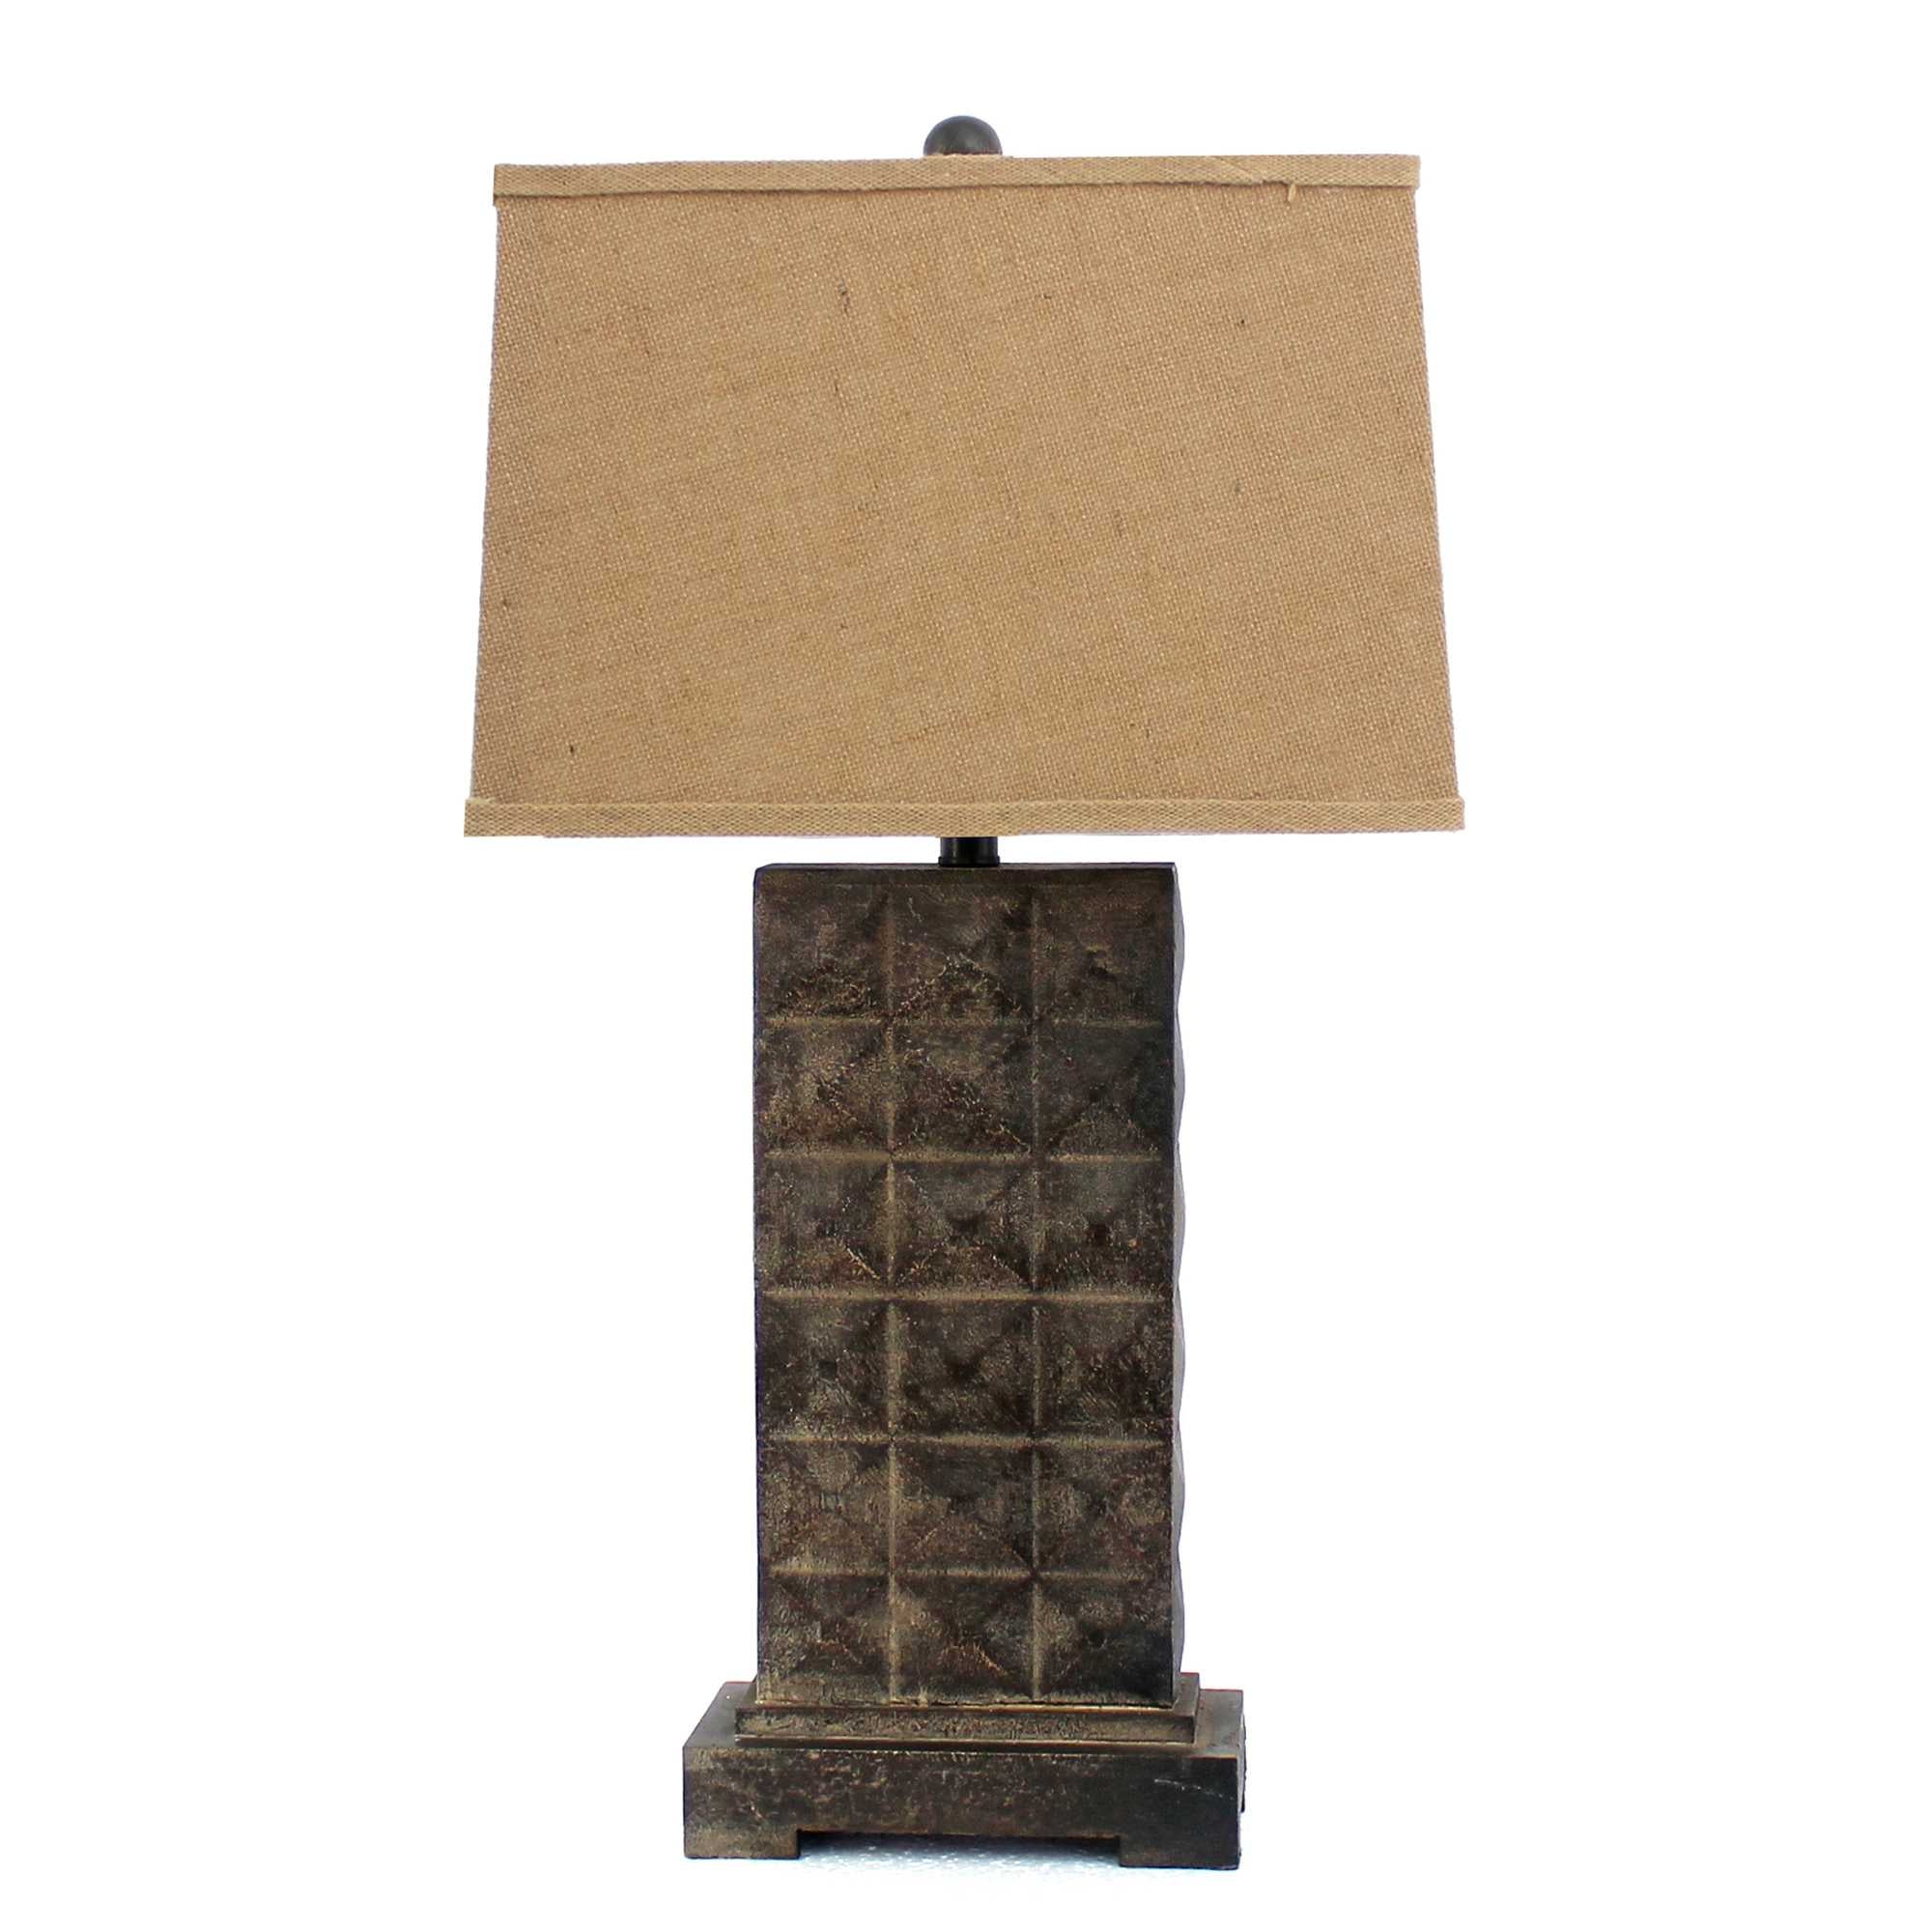 4.75 X 9.5 X 29.5 Brown Vintage With Metal Pedestal - Table Lamp